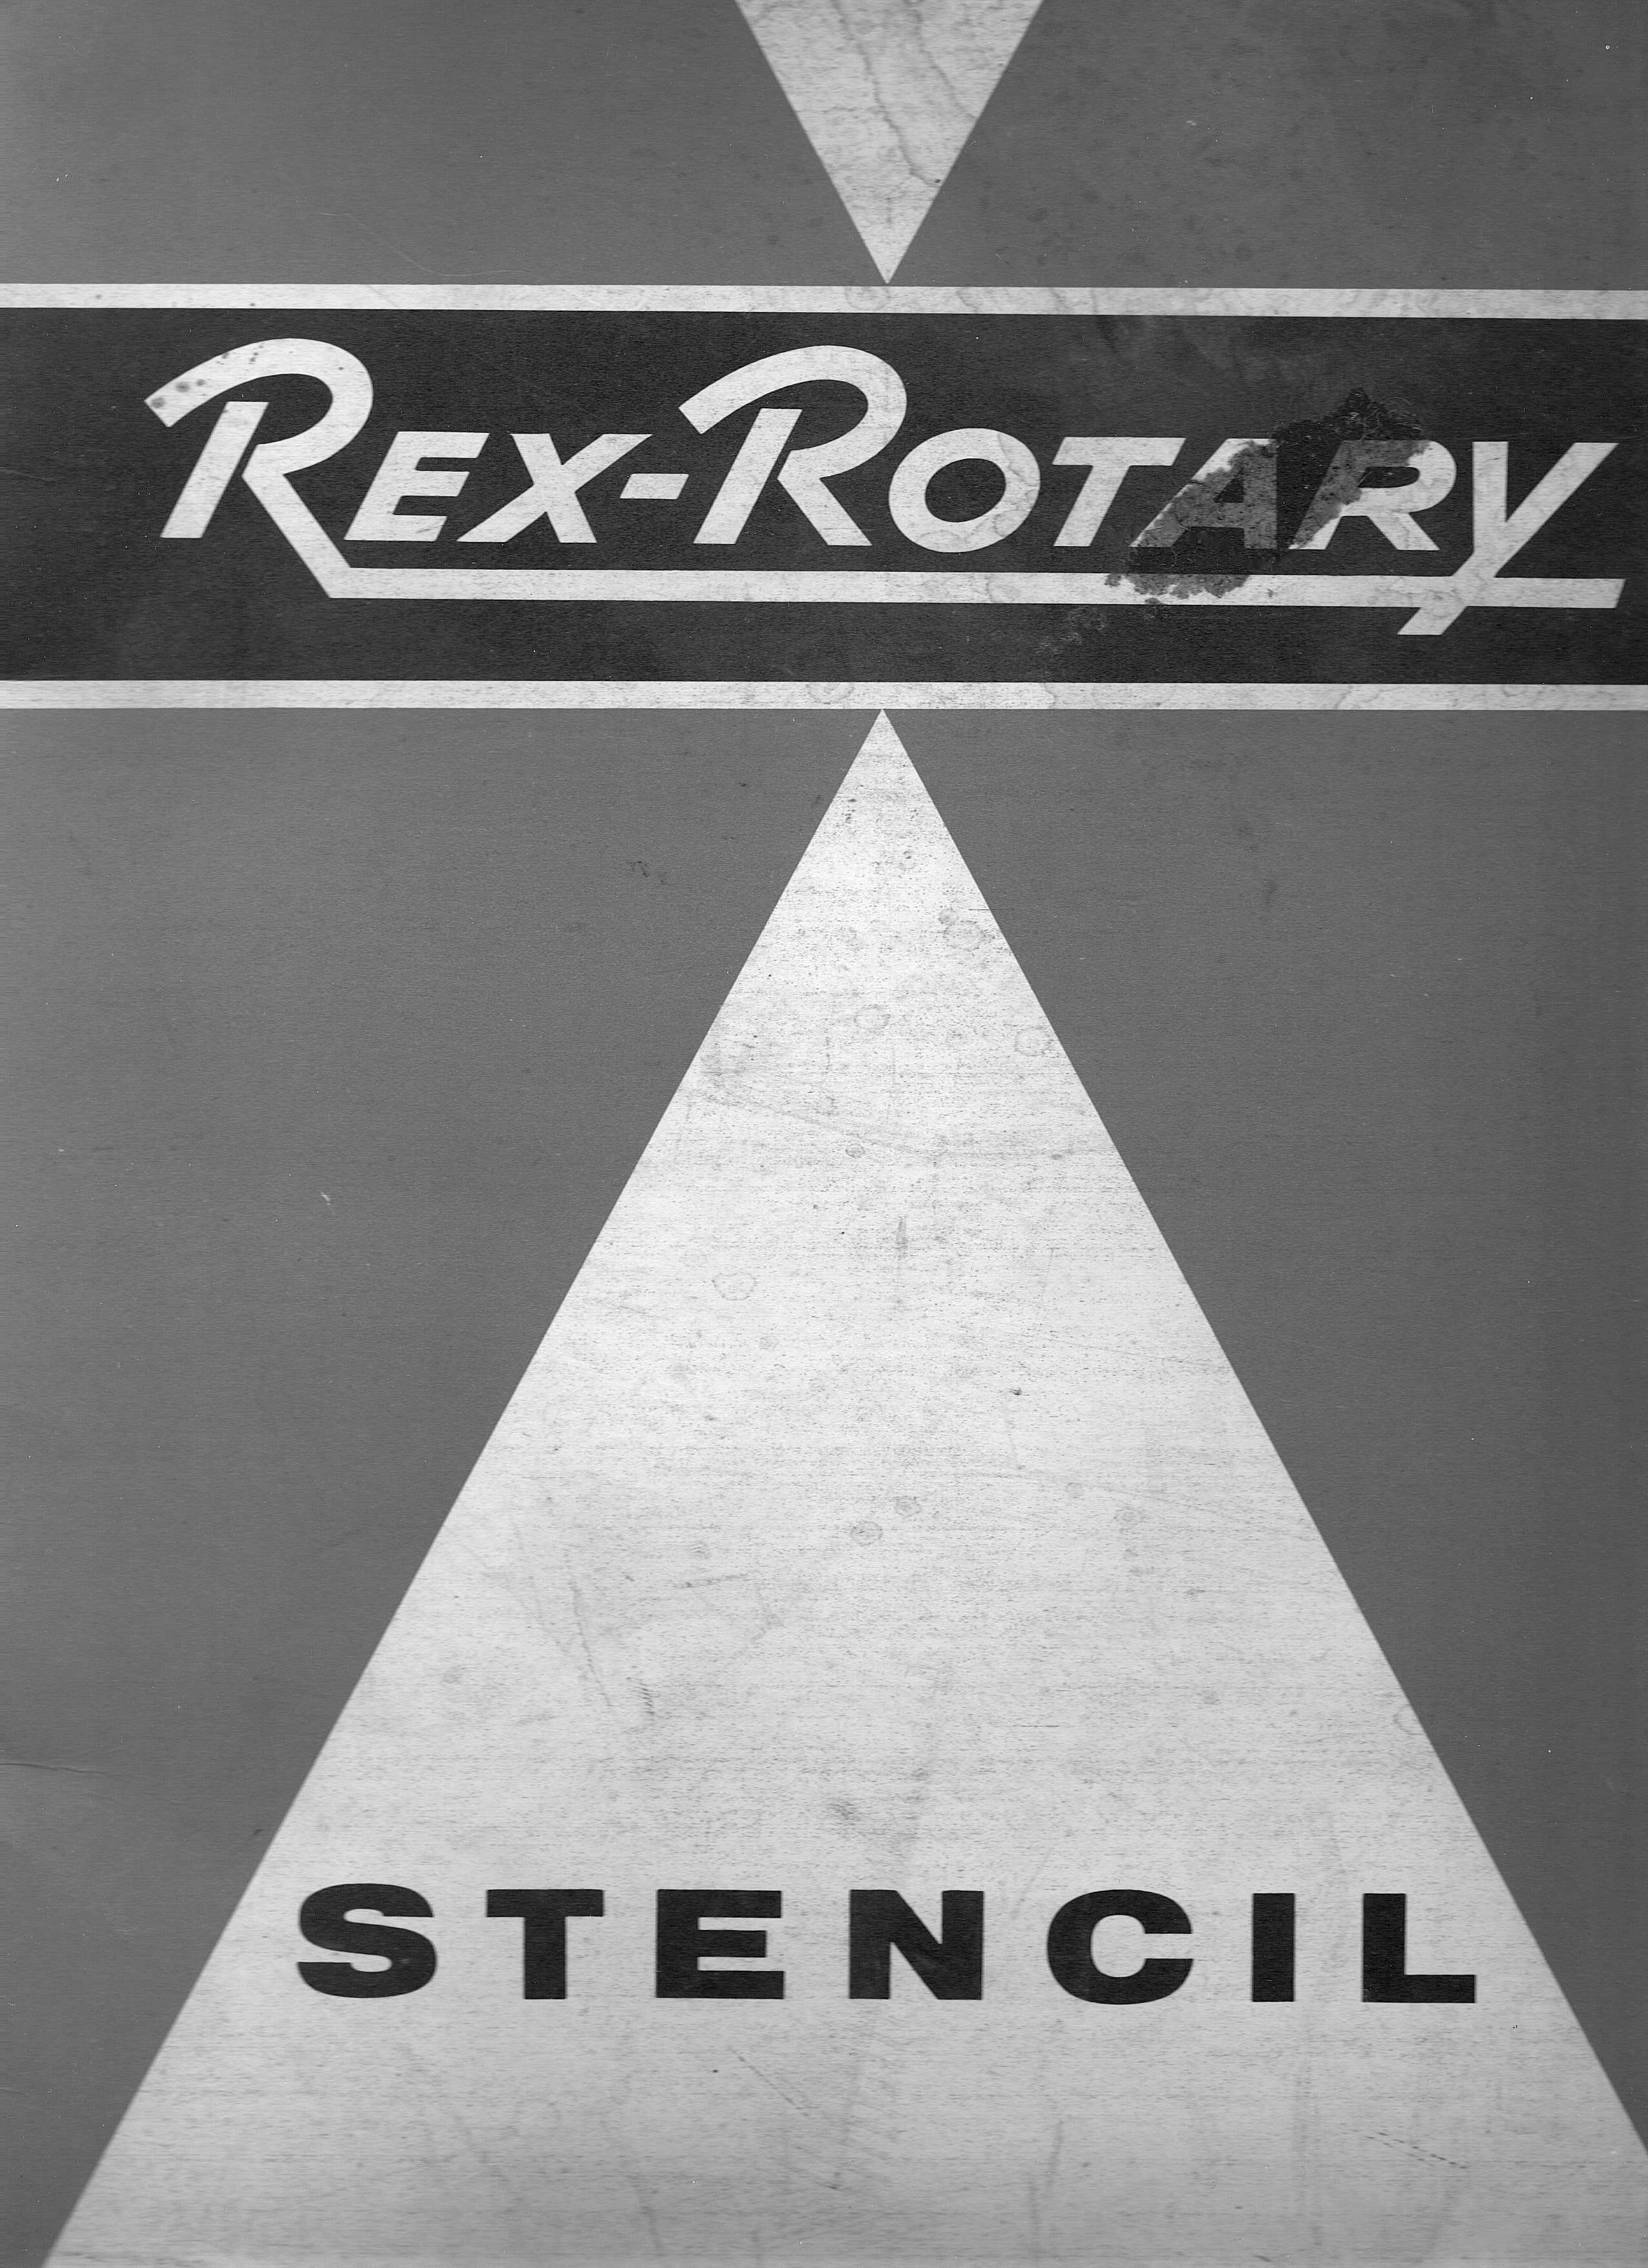 Rex-Rotary STEN-CIL, Privatbesitz